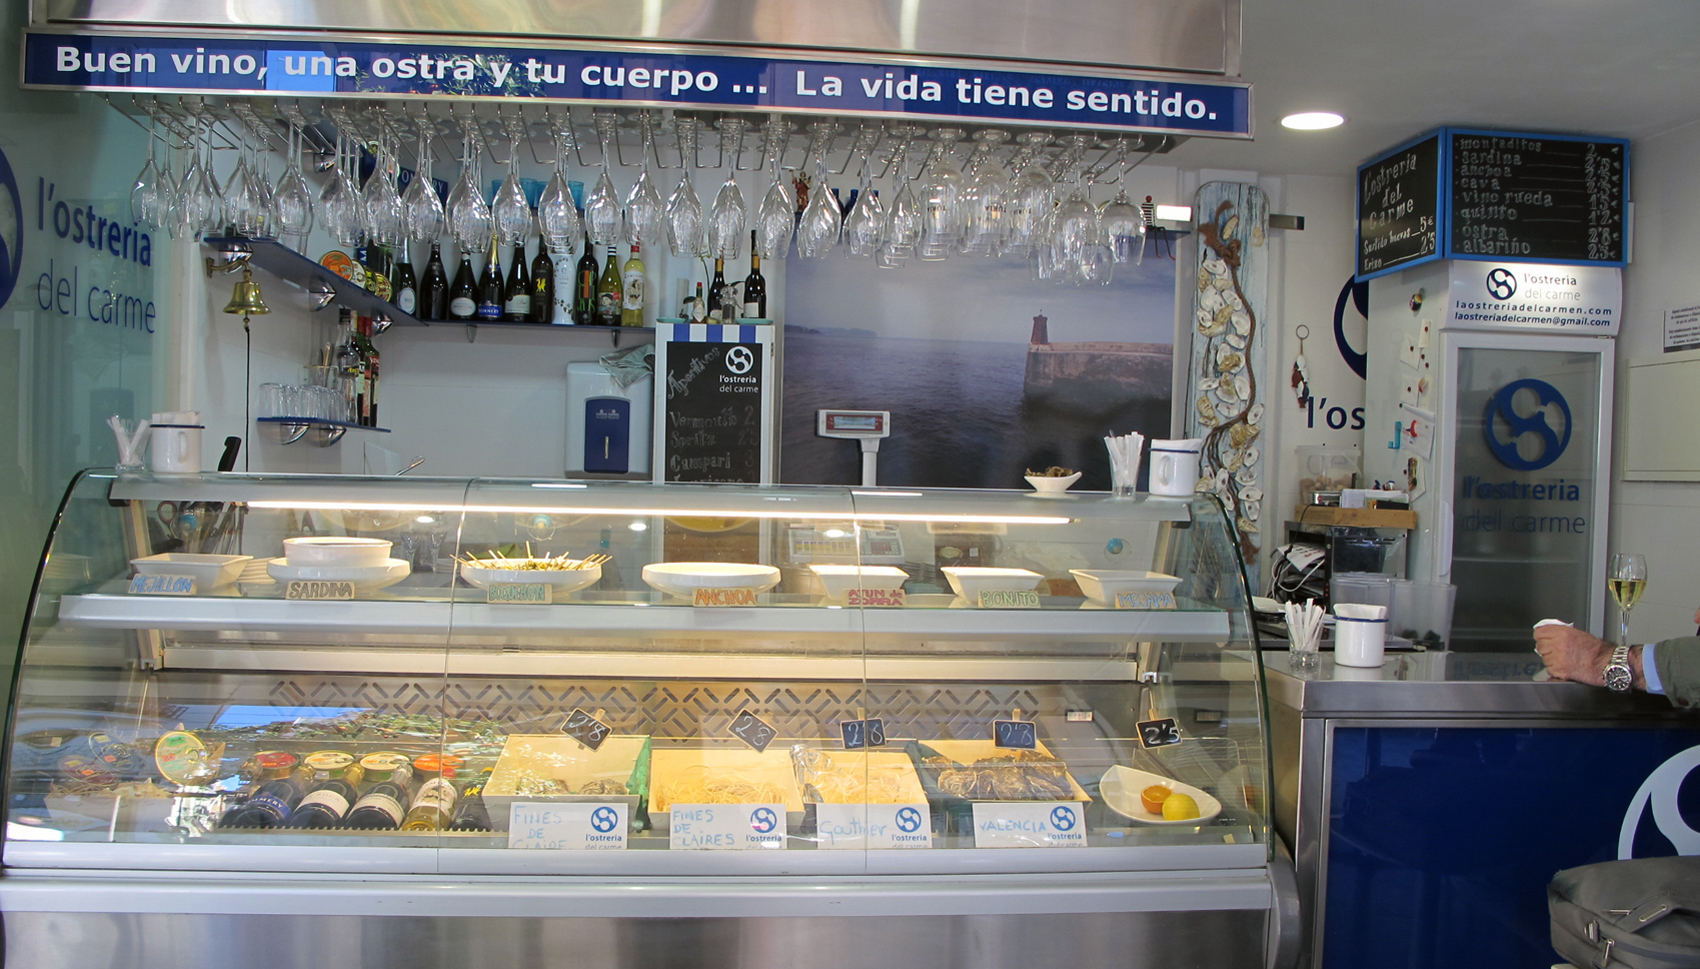 En La Ostrería del Carmen (Mercado de Mossén Sorell) puedes degustar ostras y una amplia variedad de salazones